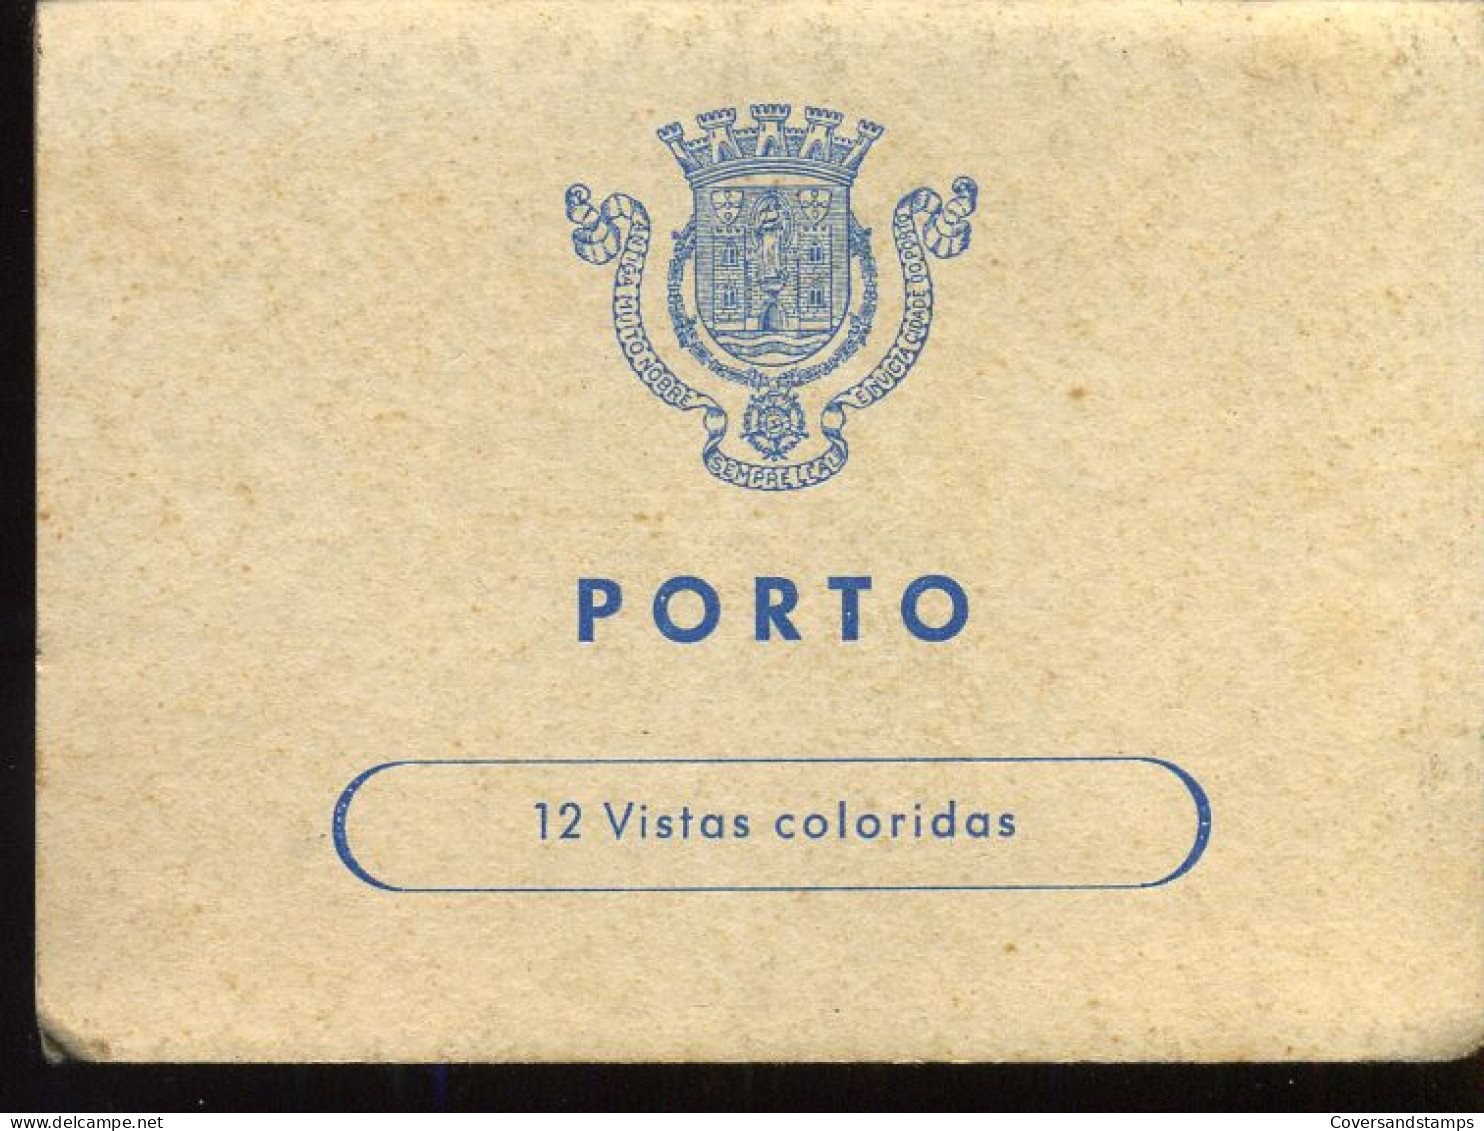 10 Color Snapshots - Porto - Porto